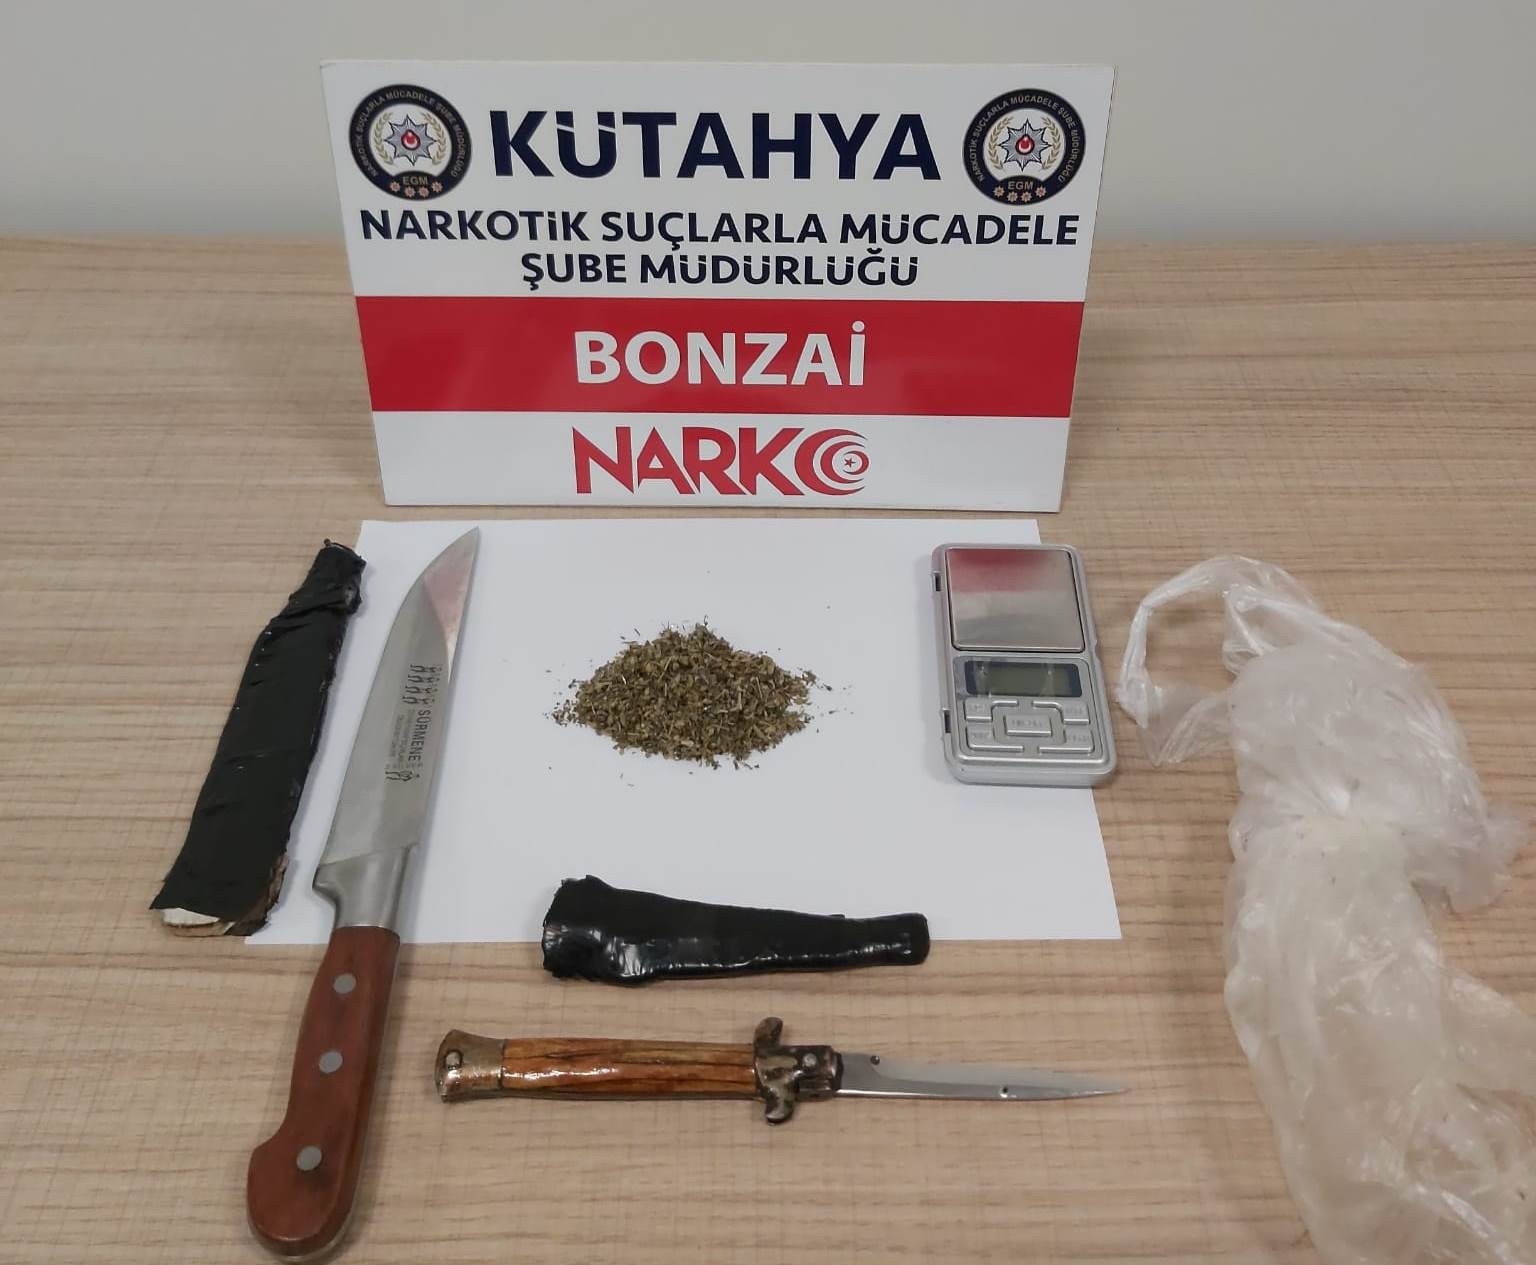 Kütahya’da uyuşturucu operasyonunda 4 şüpheli yakalandı #kutahya